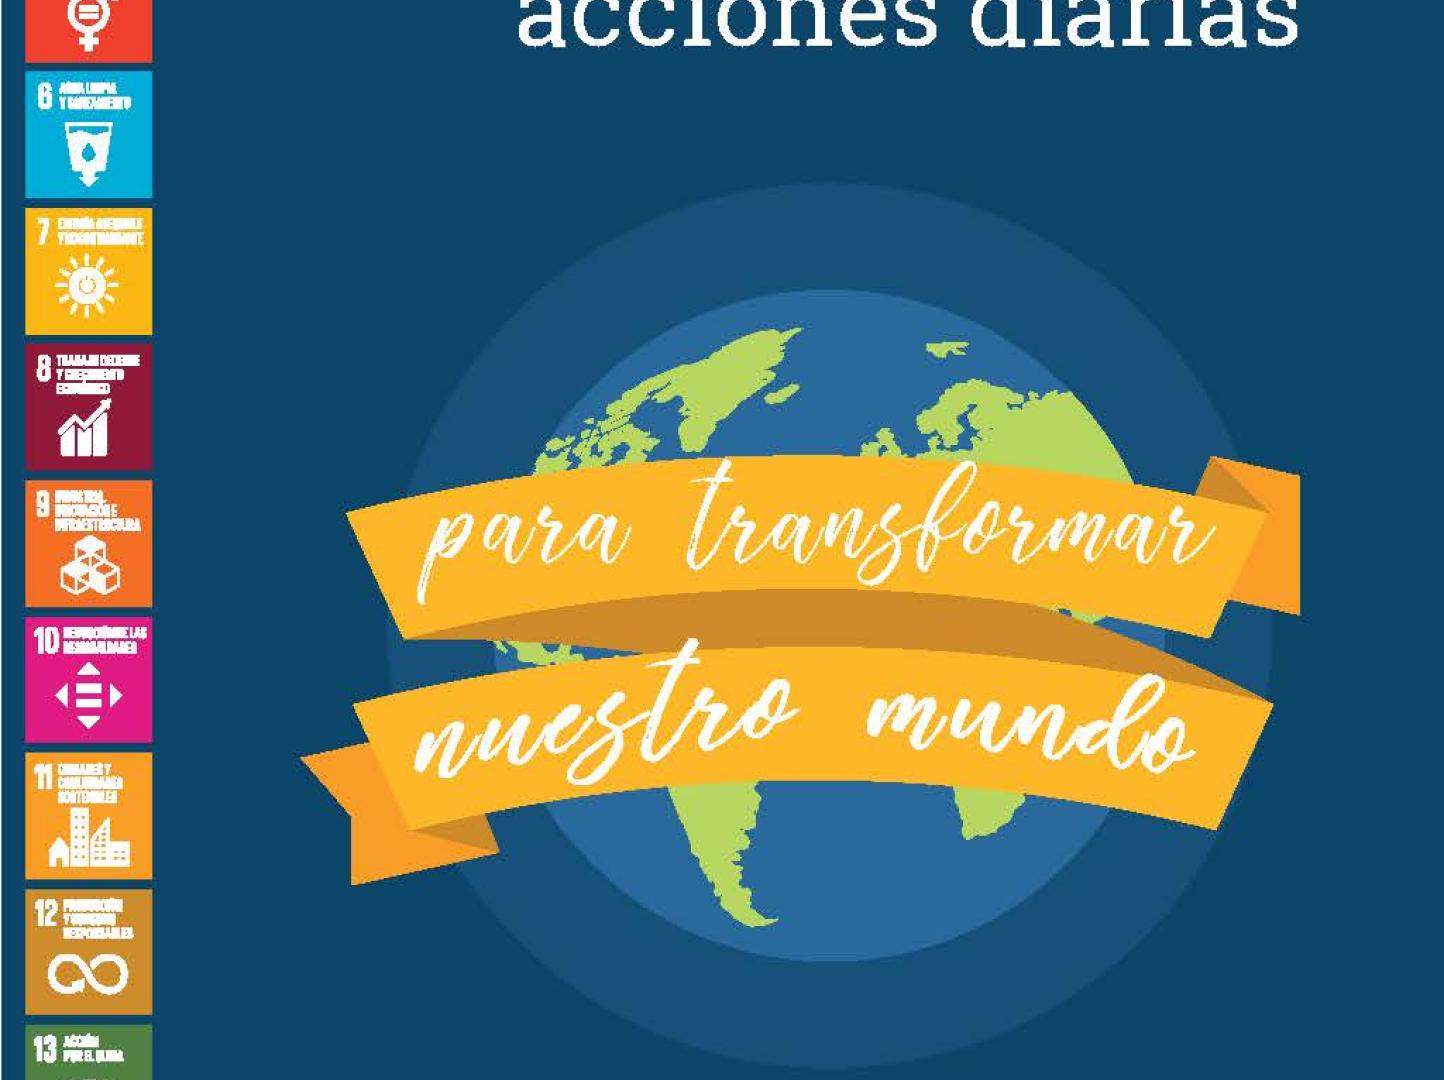 170 Acciones para Transformar Nuestro Mundo